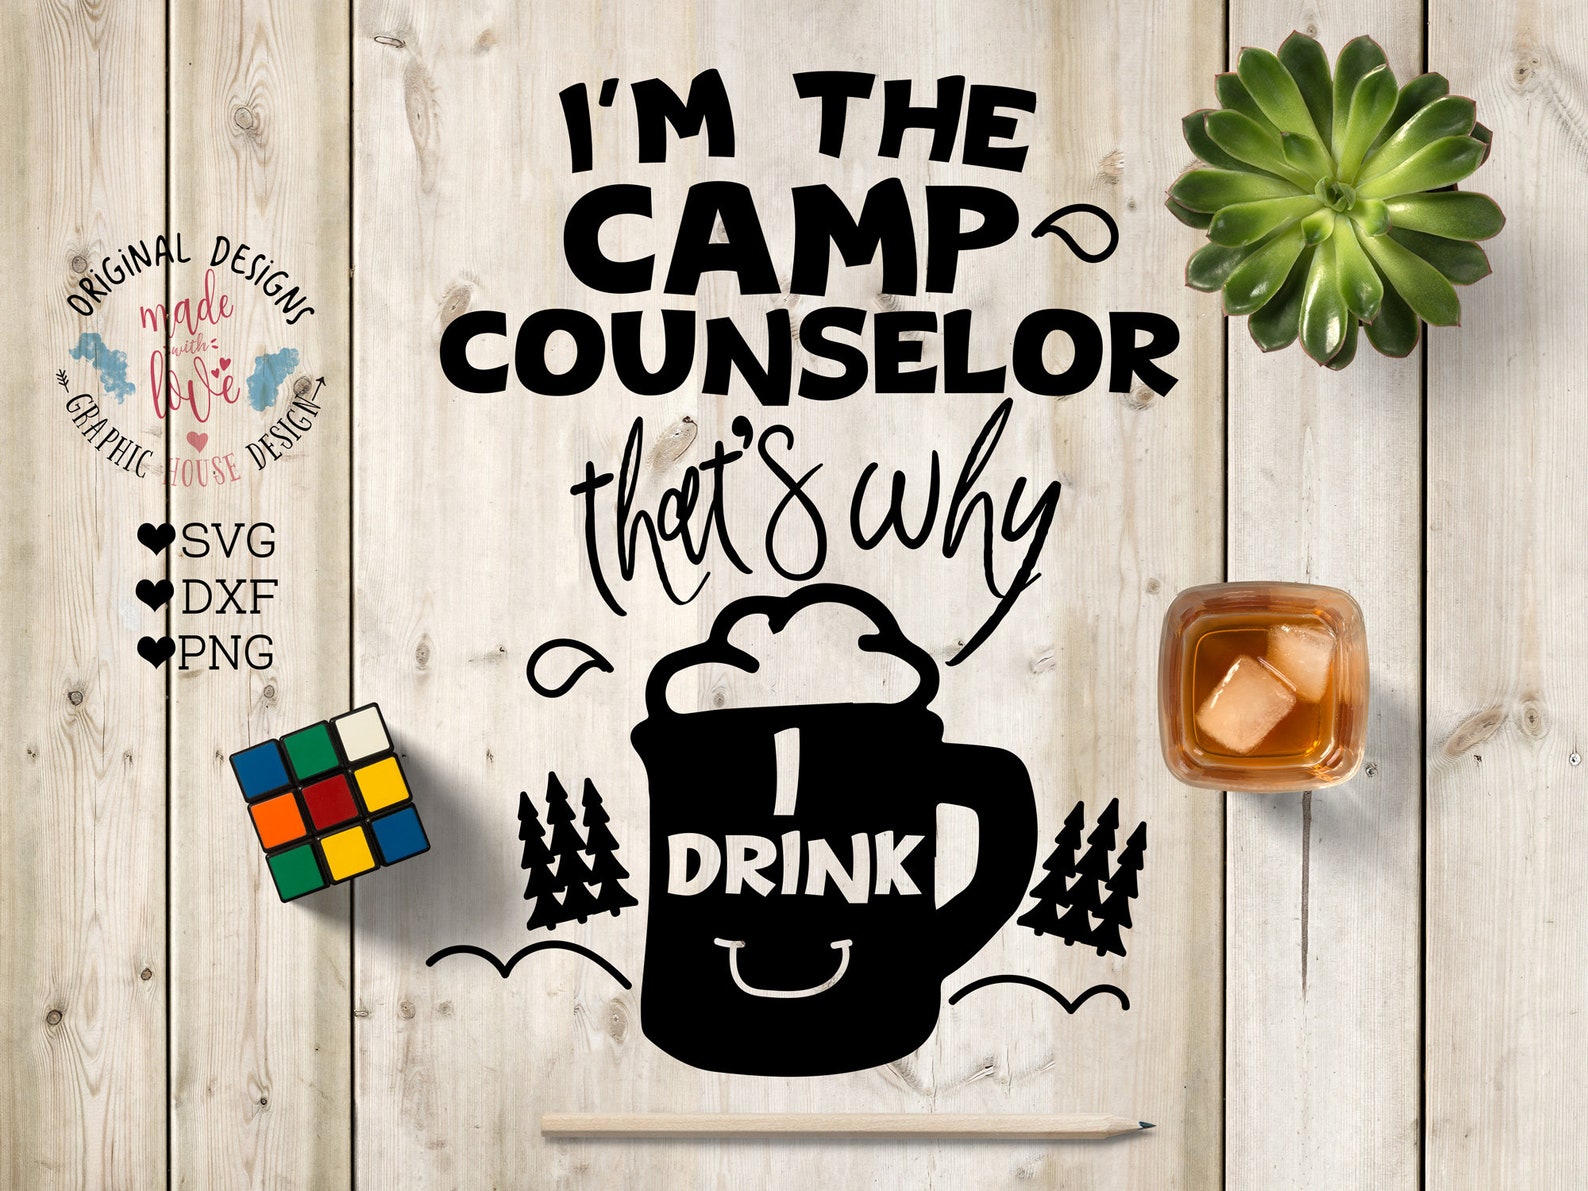 Camp counselor. Camp Counselor PNG. Camp Counsellor перевод на русский.